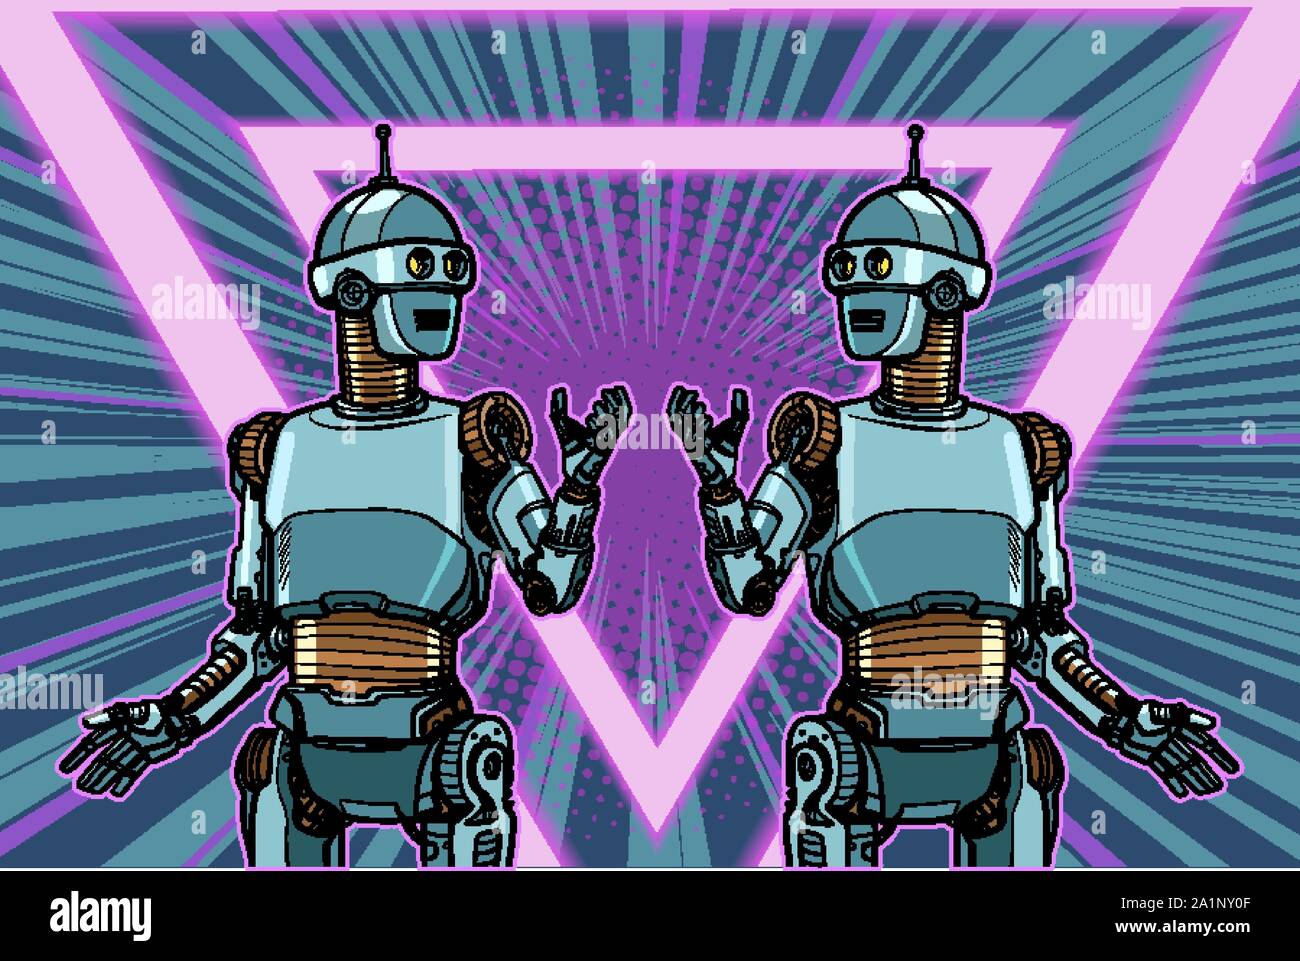 Robot Cyber Monday poster publicitario. Pop art dibujo ilustración vector vintage retro kitsch Ilustración del Vector